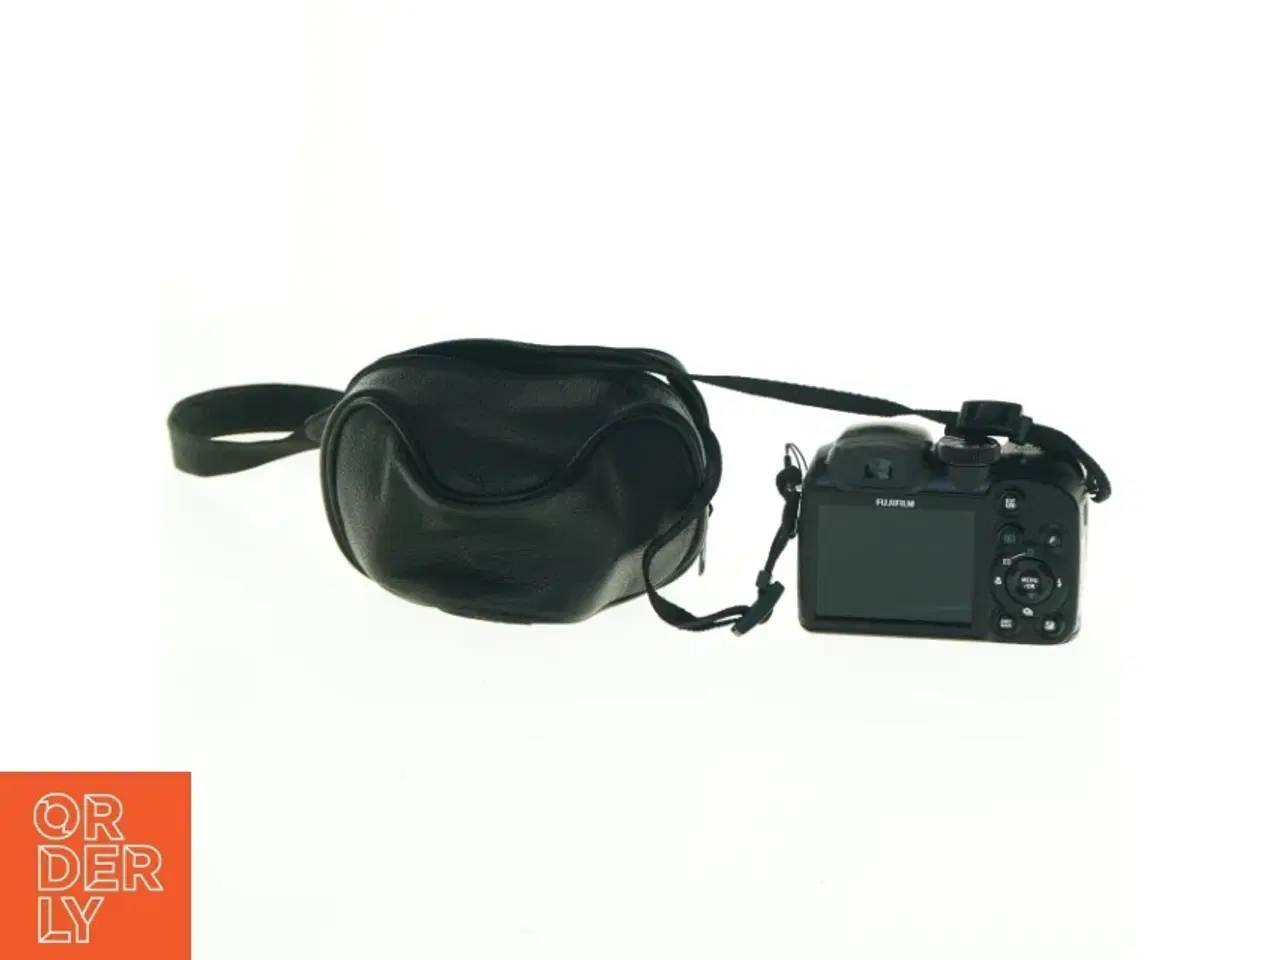 Billede 3 - Fujifilm digital kamera med taske fra Fujifilm (str. 10 x, 7 cm)